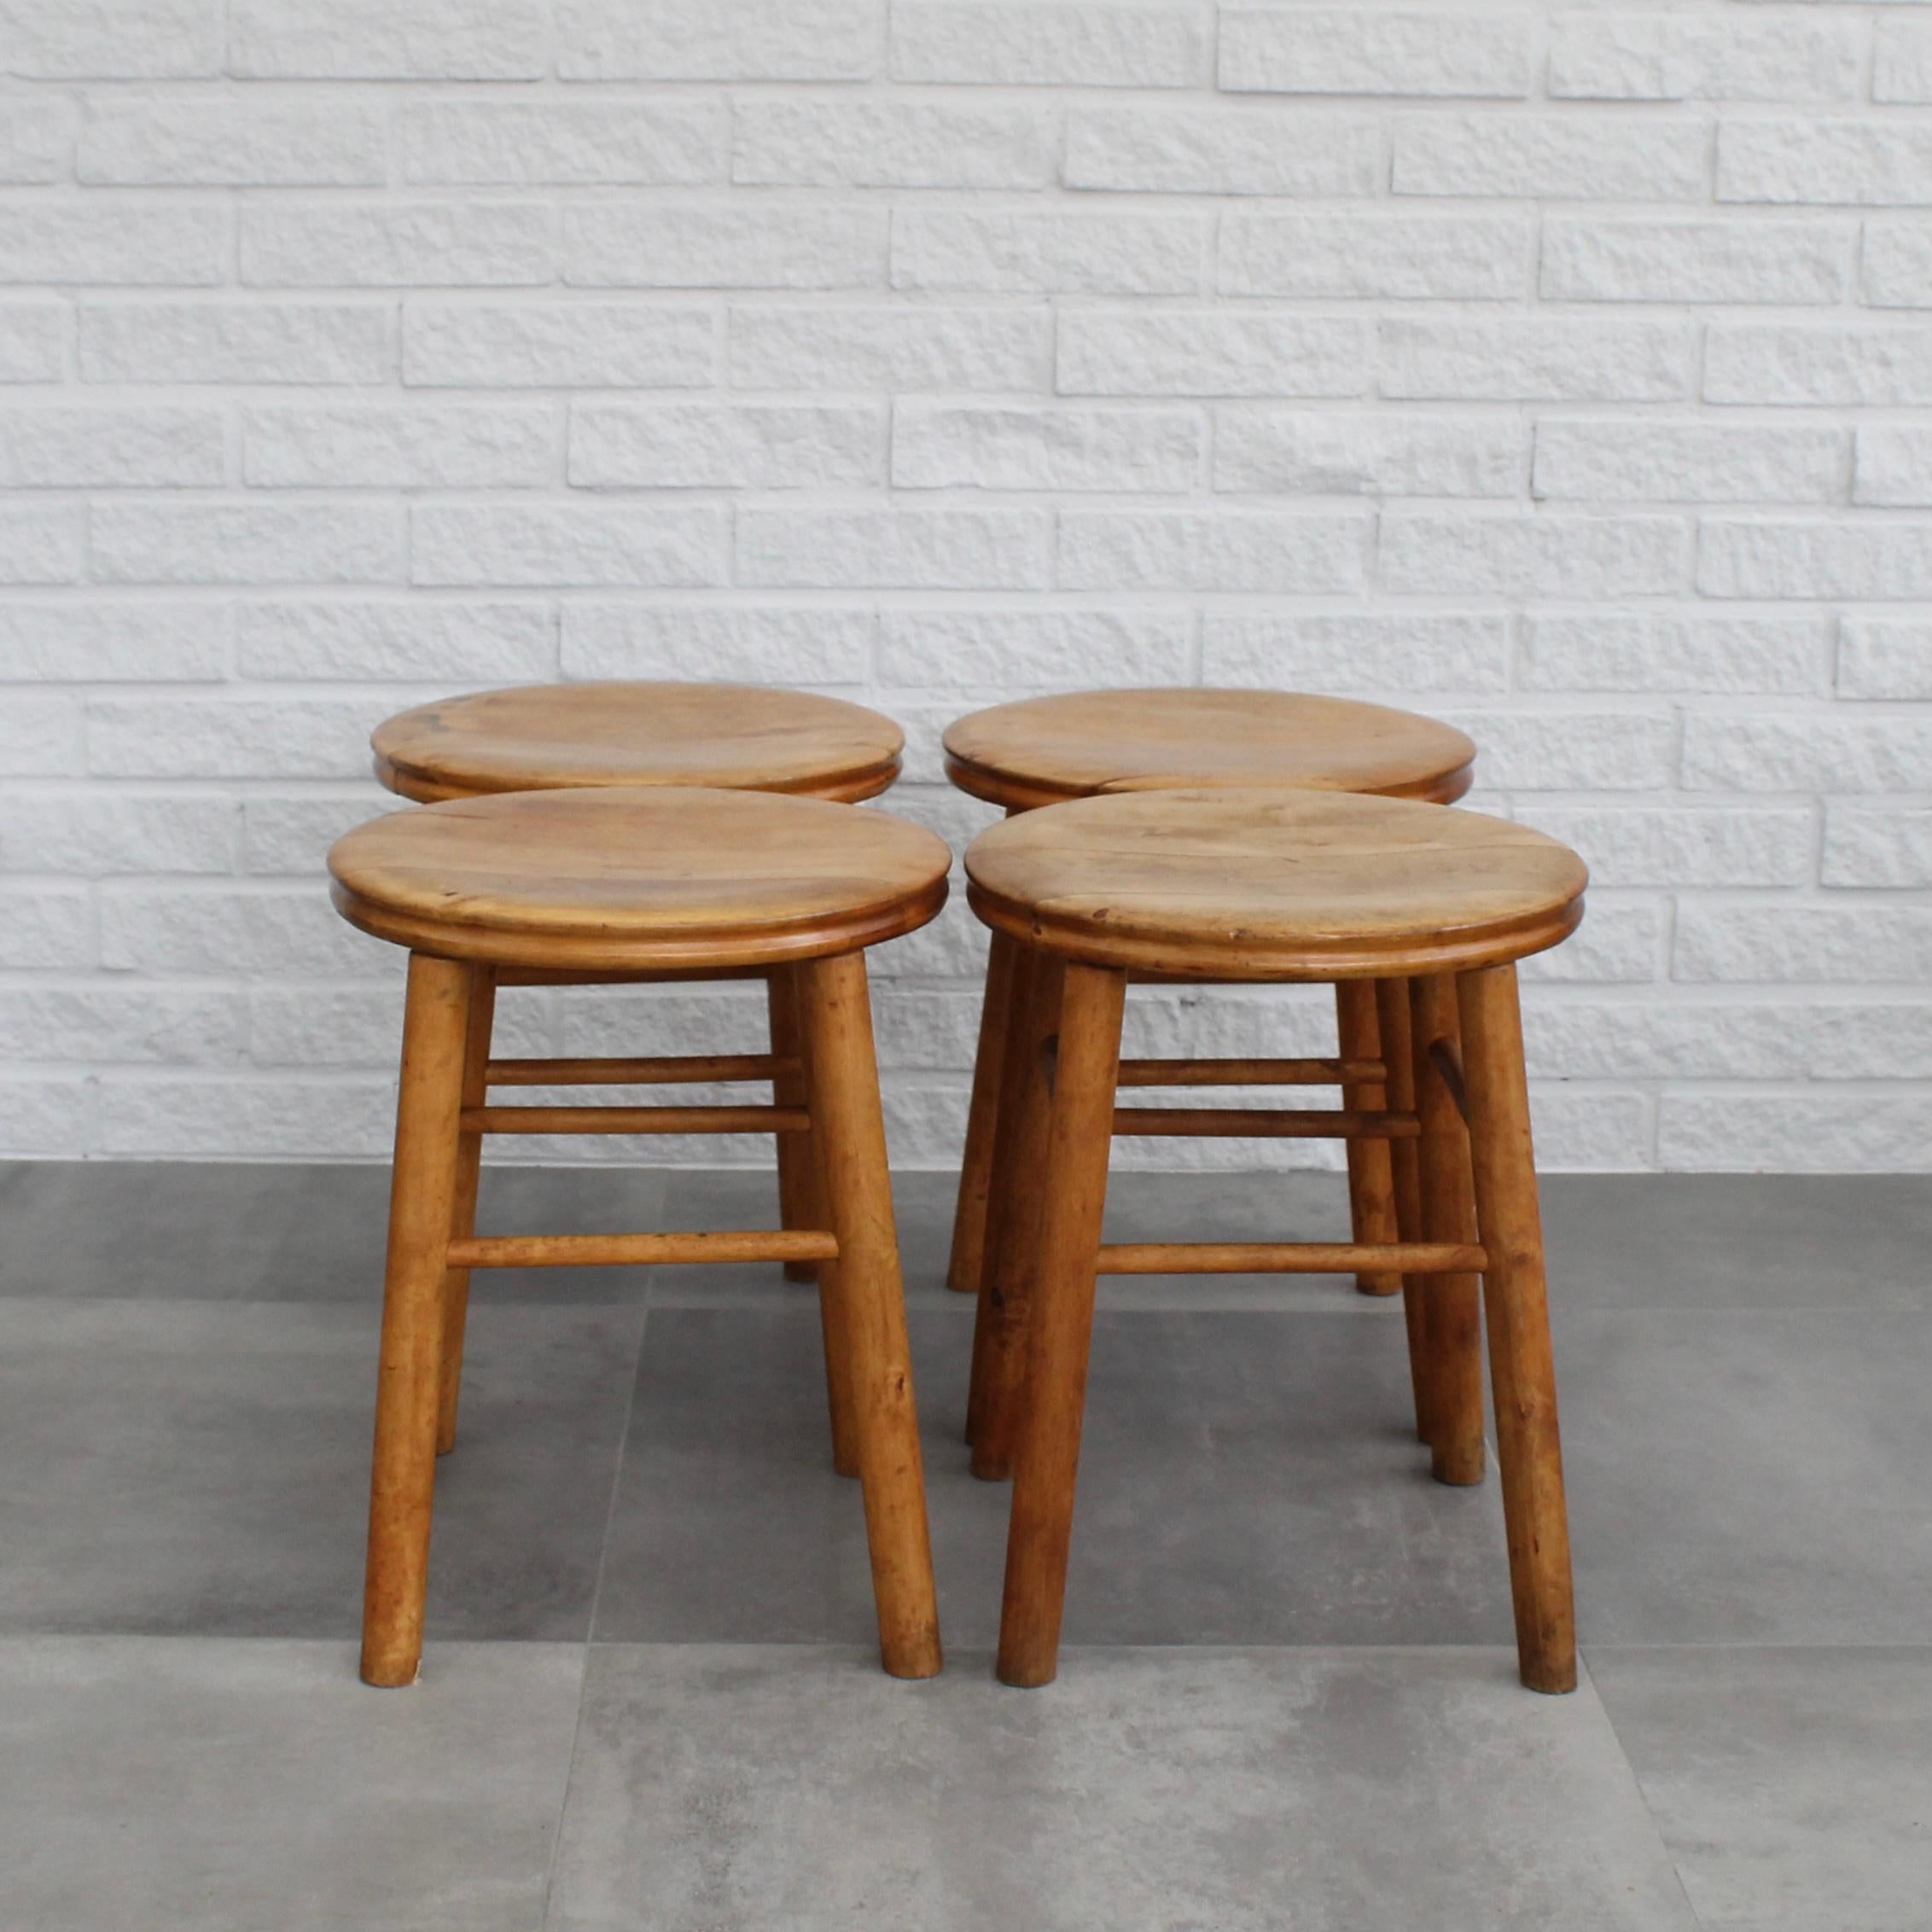 Quatre tabourets suédois en bois de bouleau des années 1930, inspirés de meubles paysans anciens. Il présente un design minimaliste caractérisé par des pieds droits reliés à des brancards et une assise ronde en forme de cuvette. 